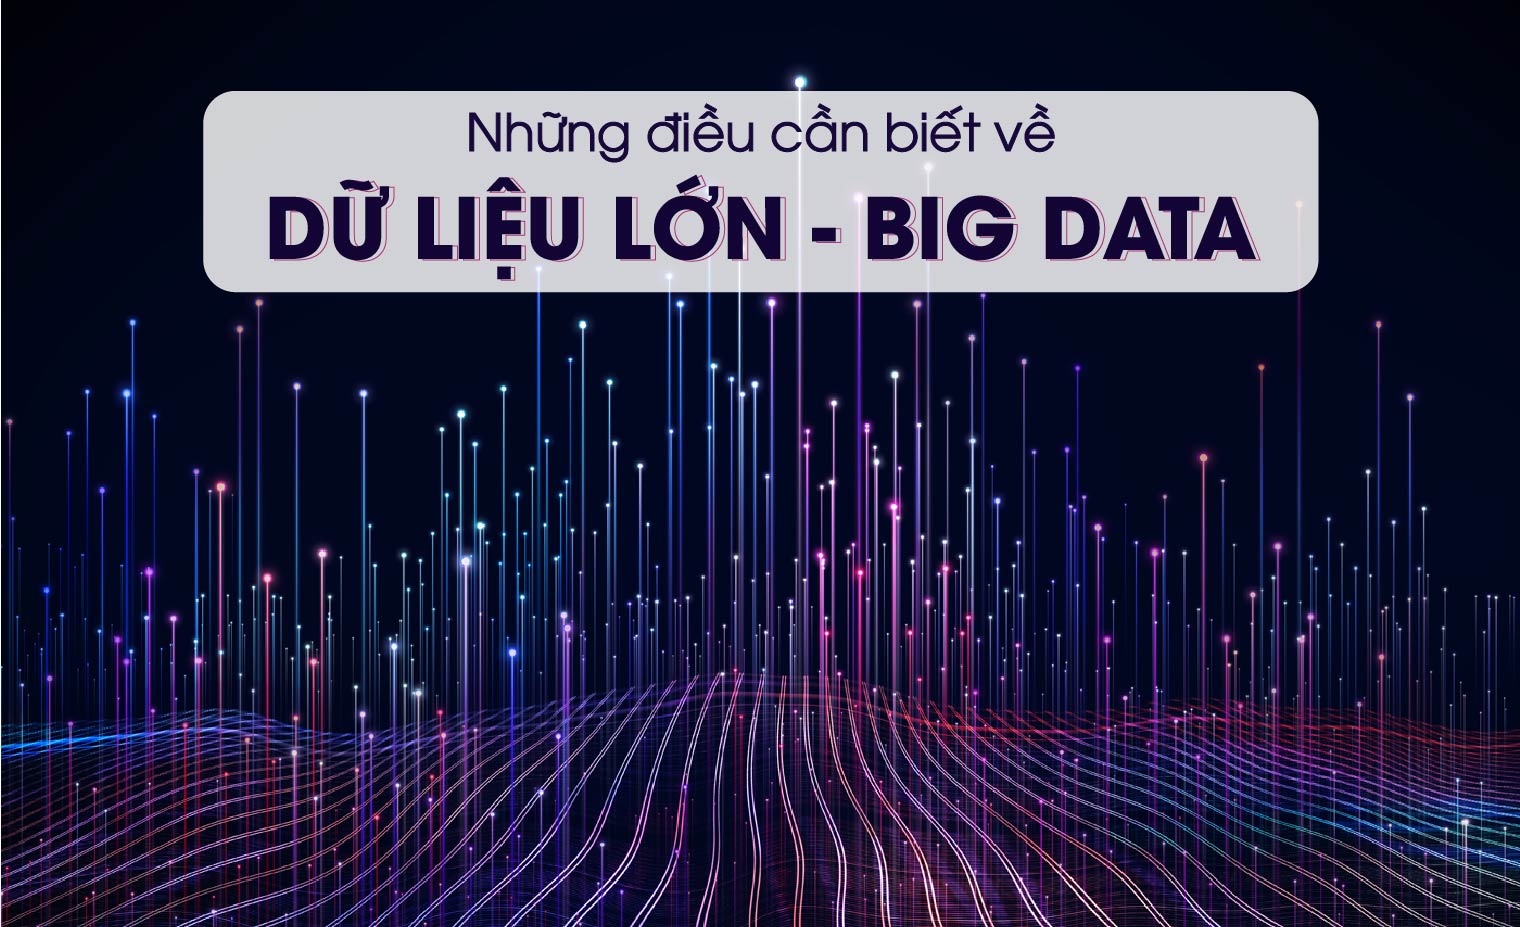 Big data là gì? Ứng dụng dữ liệu lớn